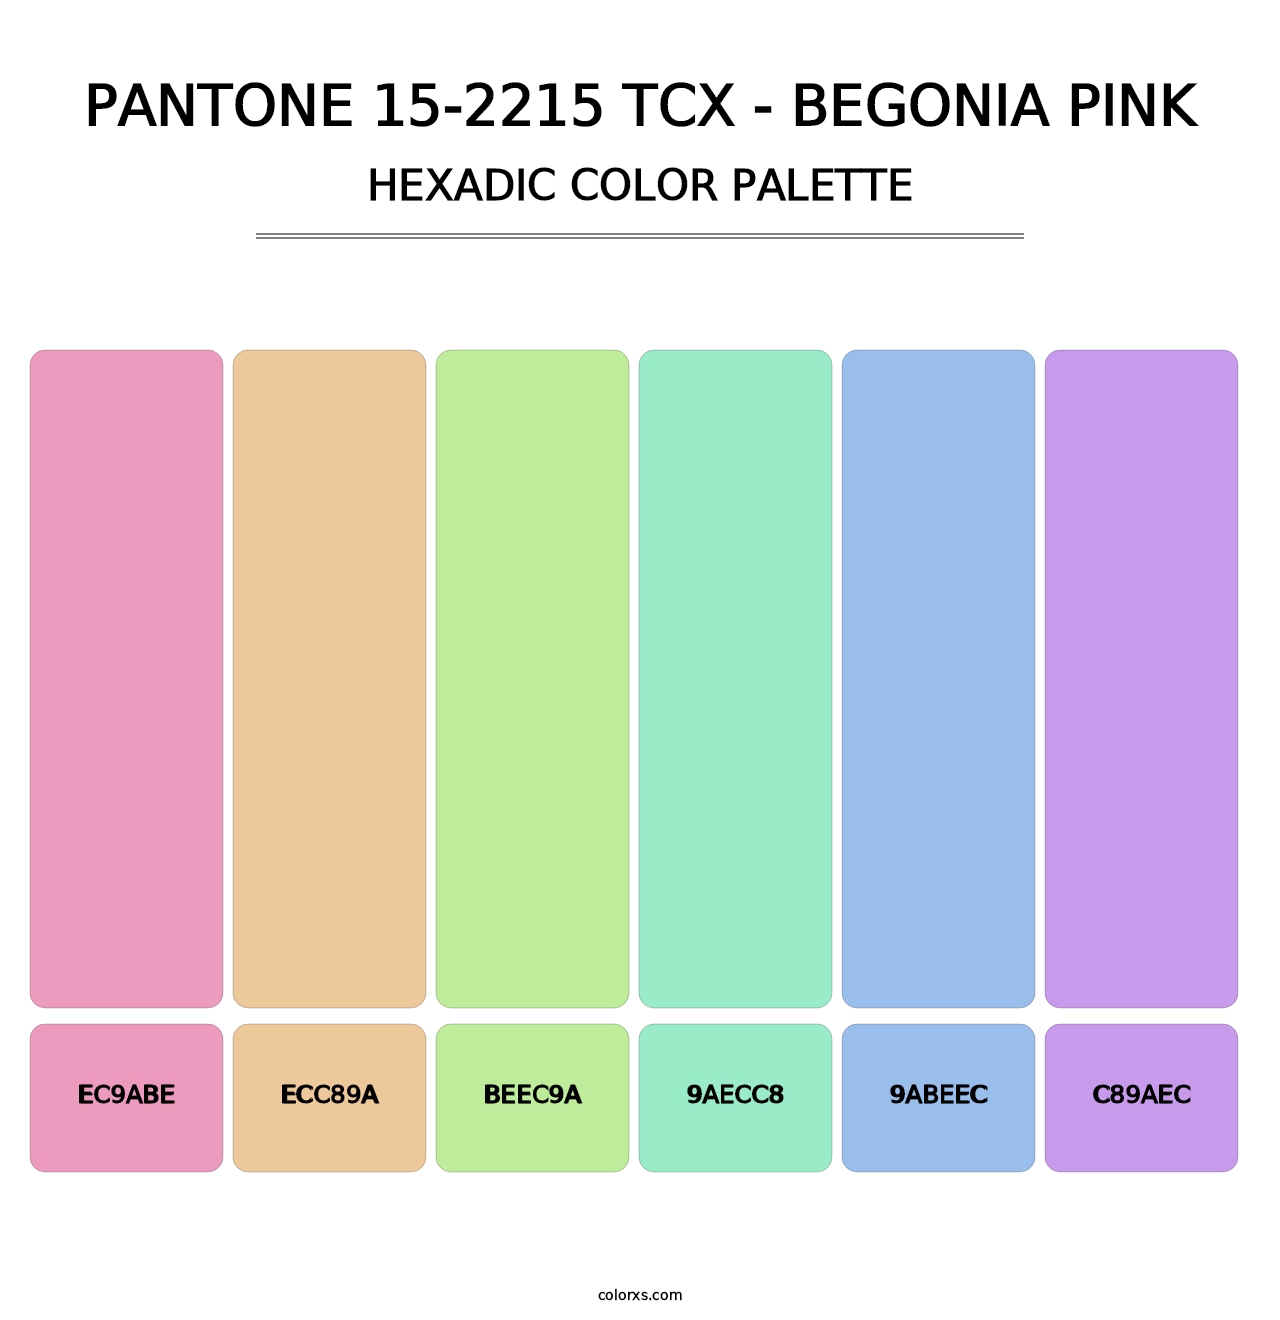 PANTONE 15-2215 TCX - Begonia Pink - Hexadic Color Palette